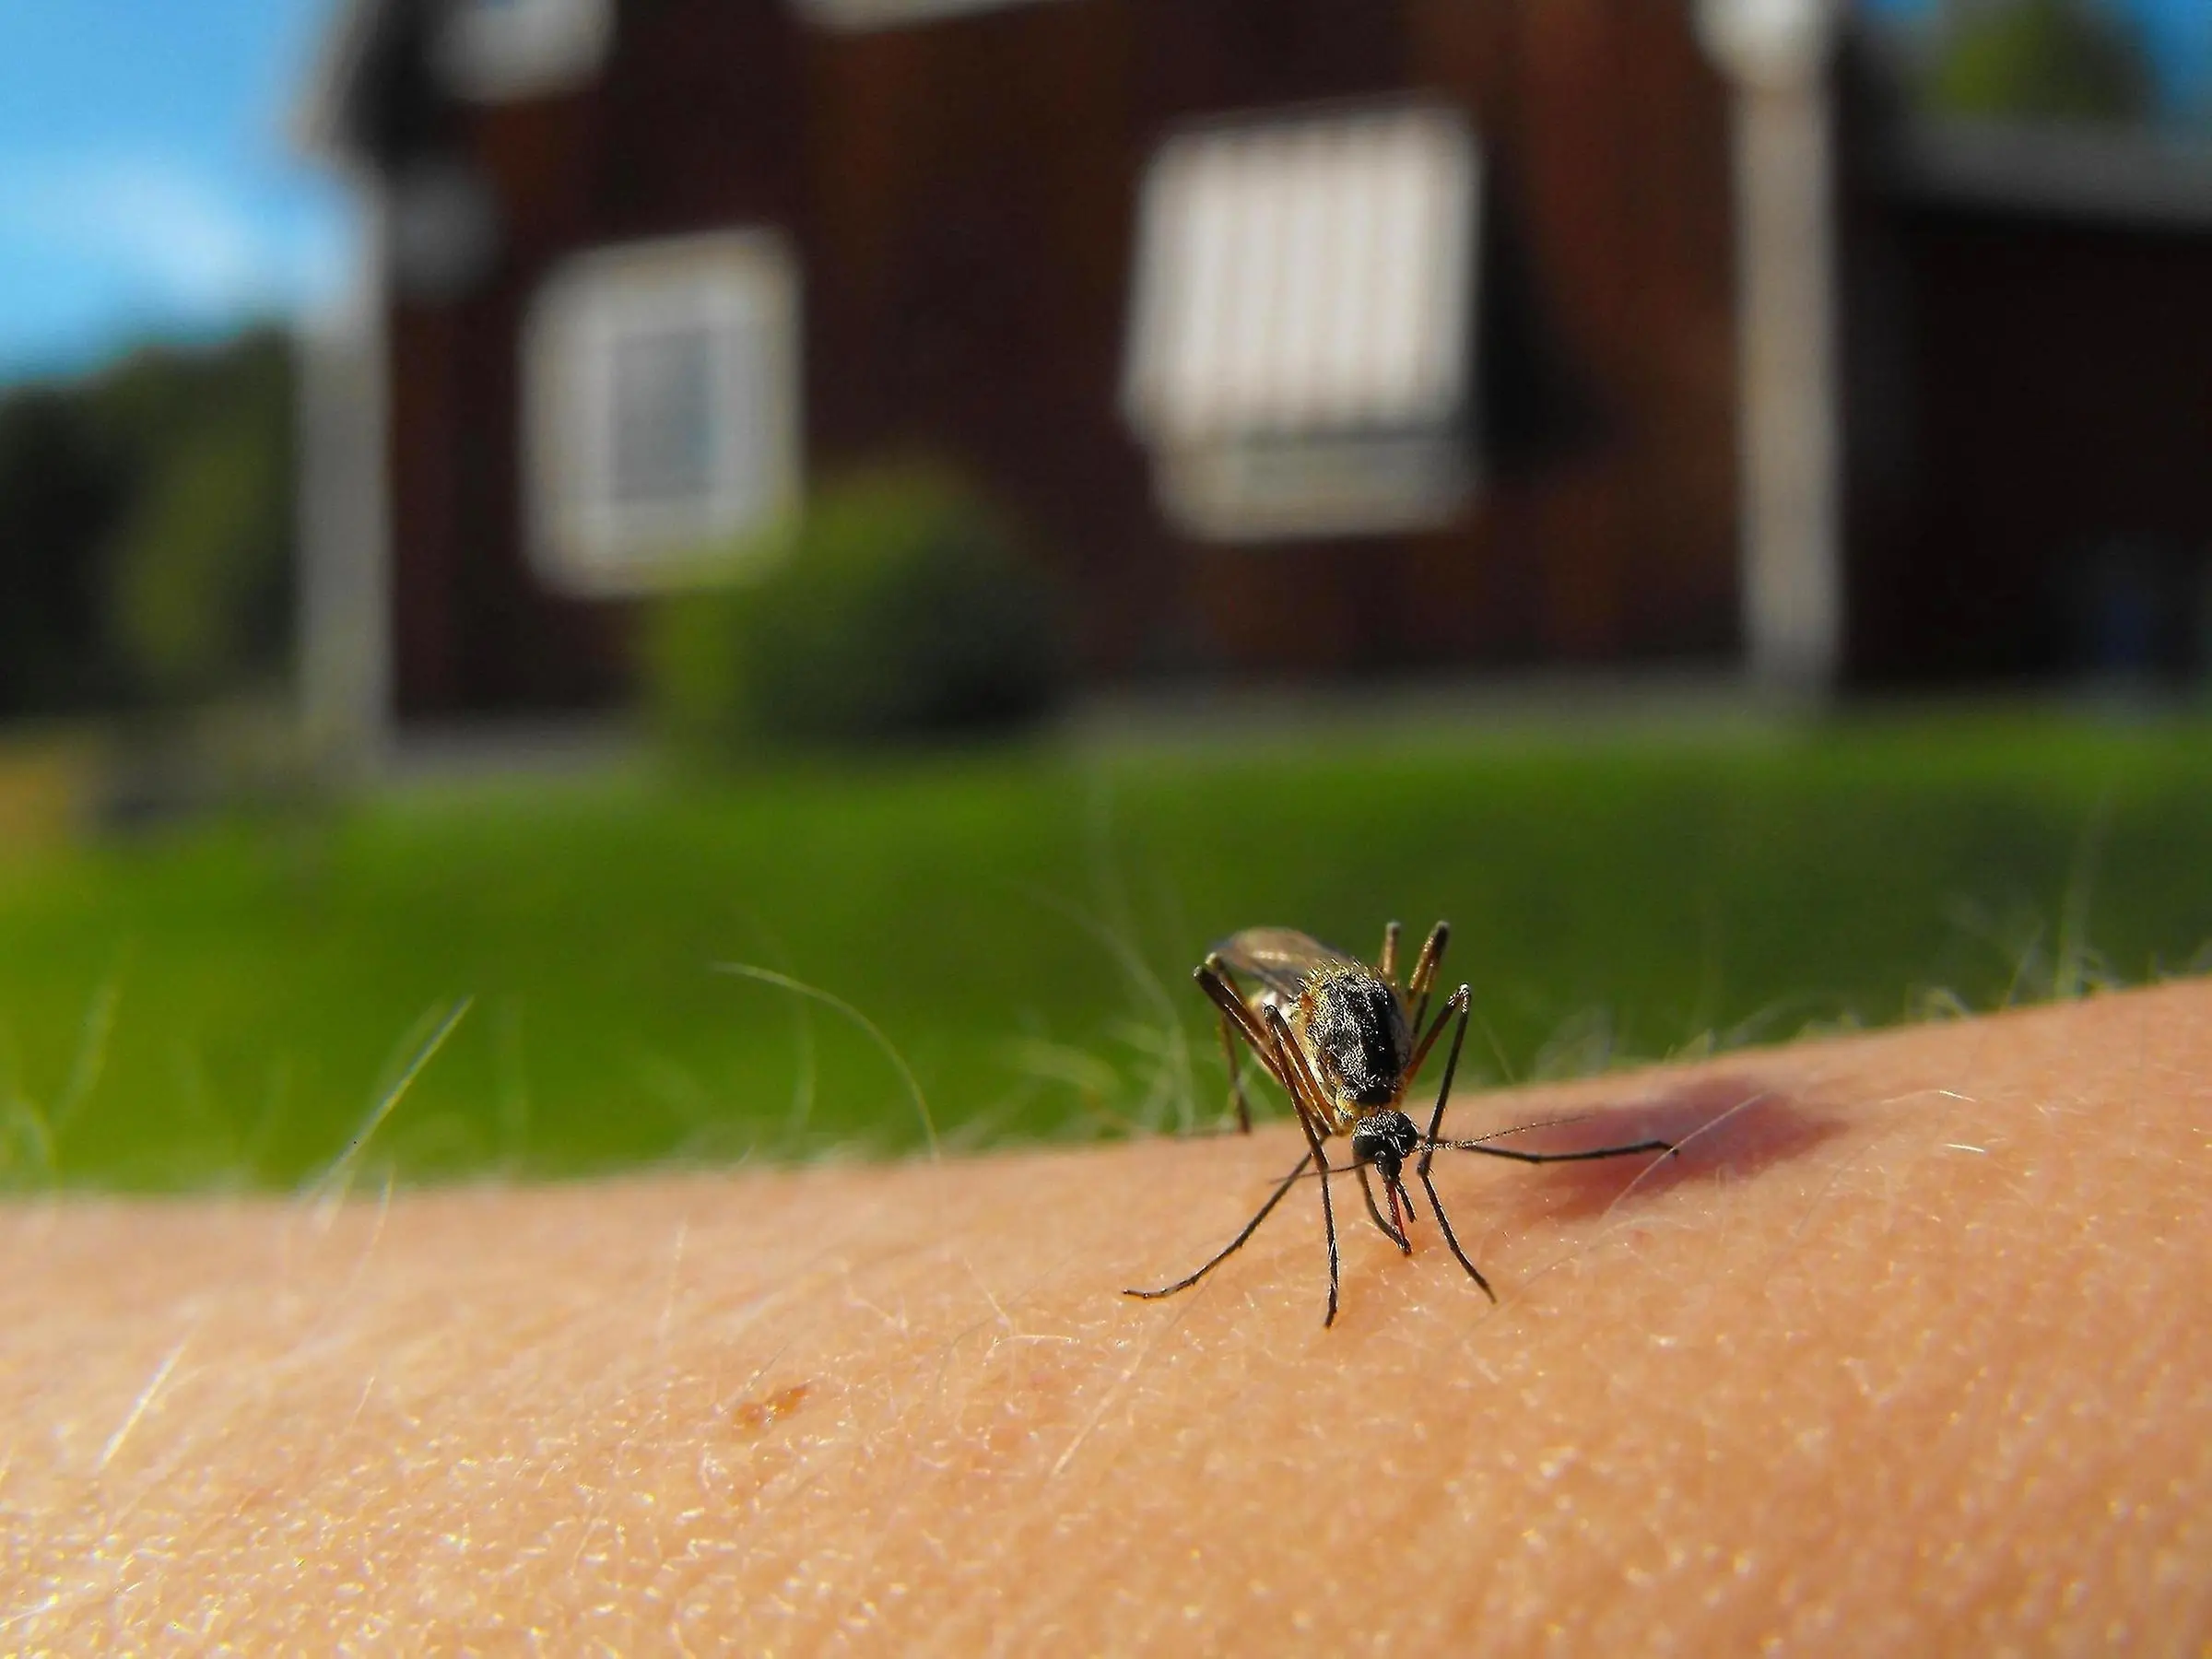 Mygga sitter på arm